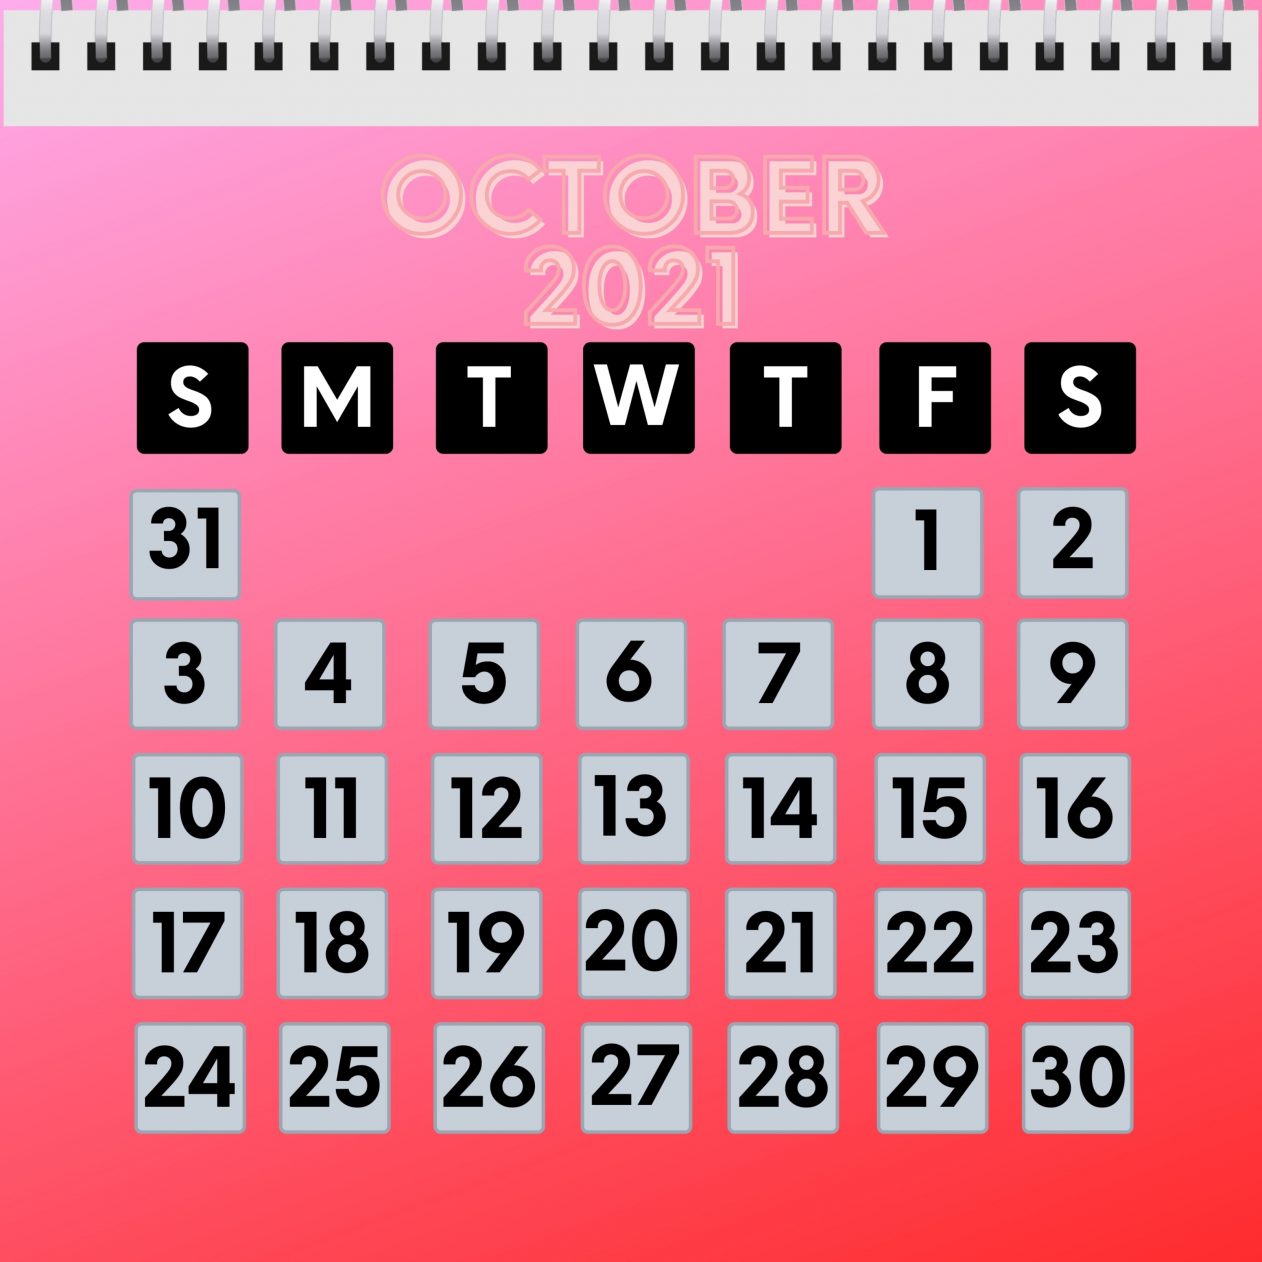 1262x1262 Parallax wallpaper 4k October 2021 Calendar iPad Wallpaper 1262x1262 pixels resolution